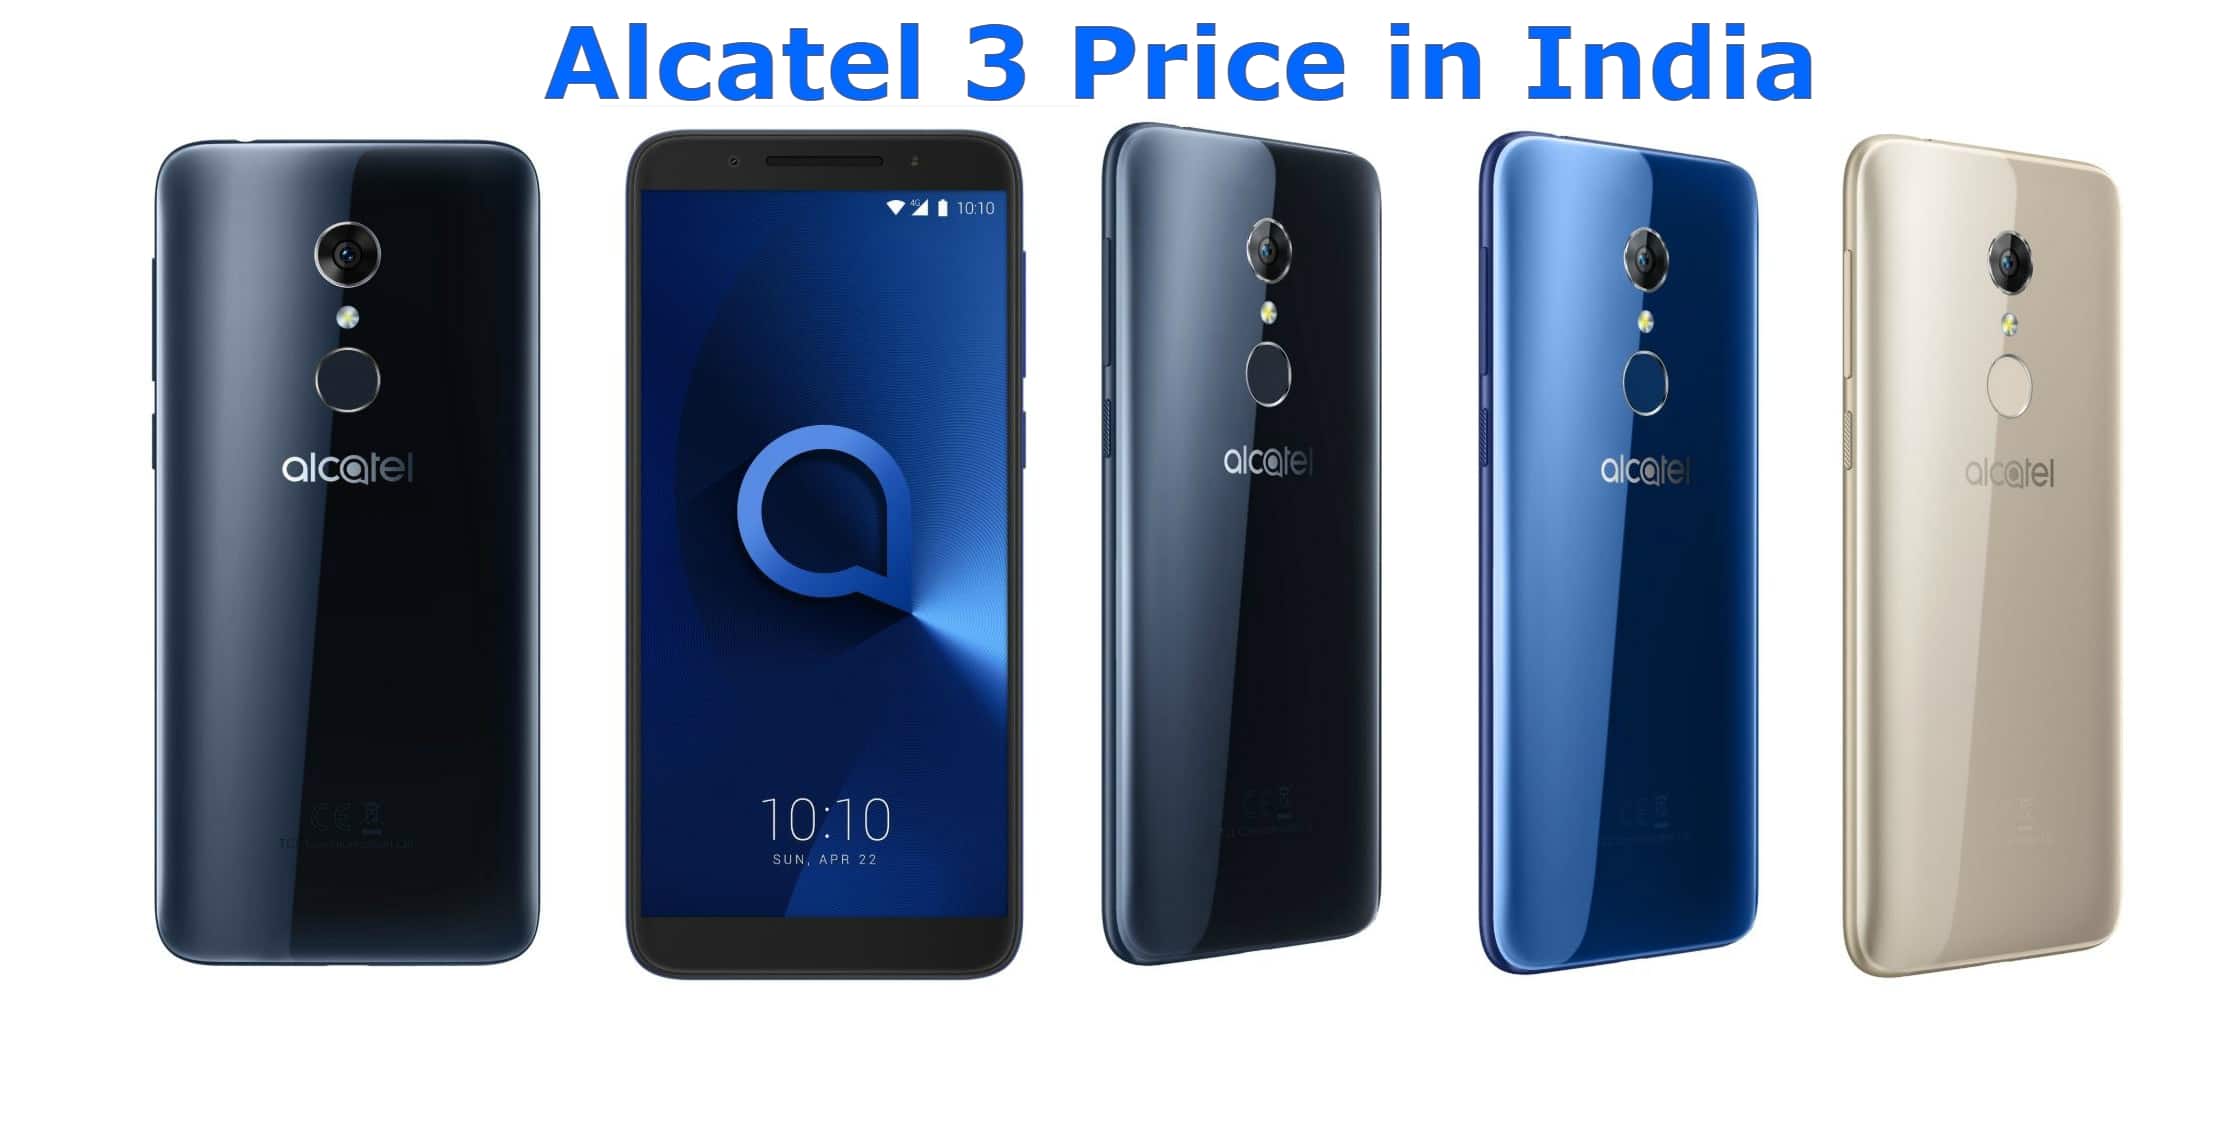 Alcatel 3 Price in India